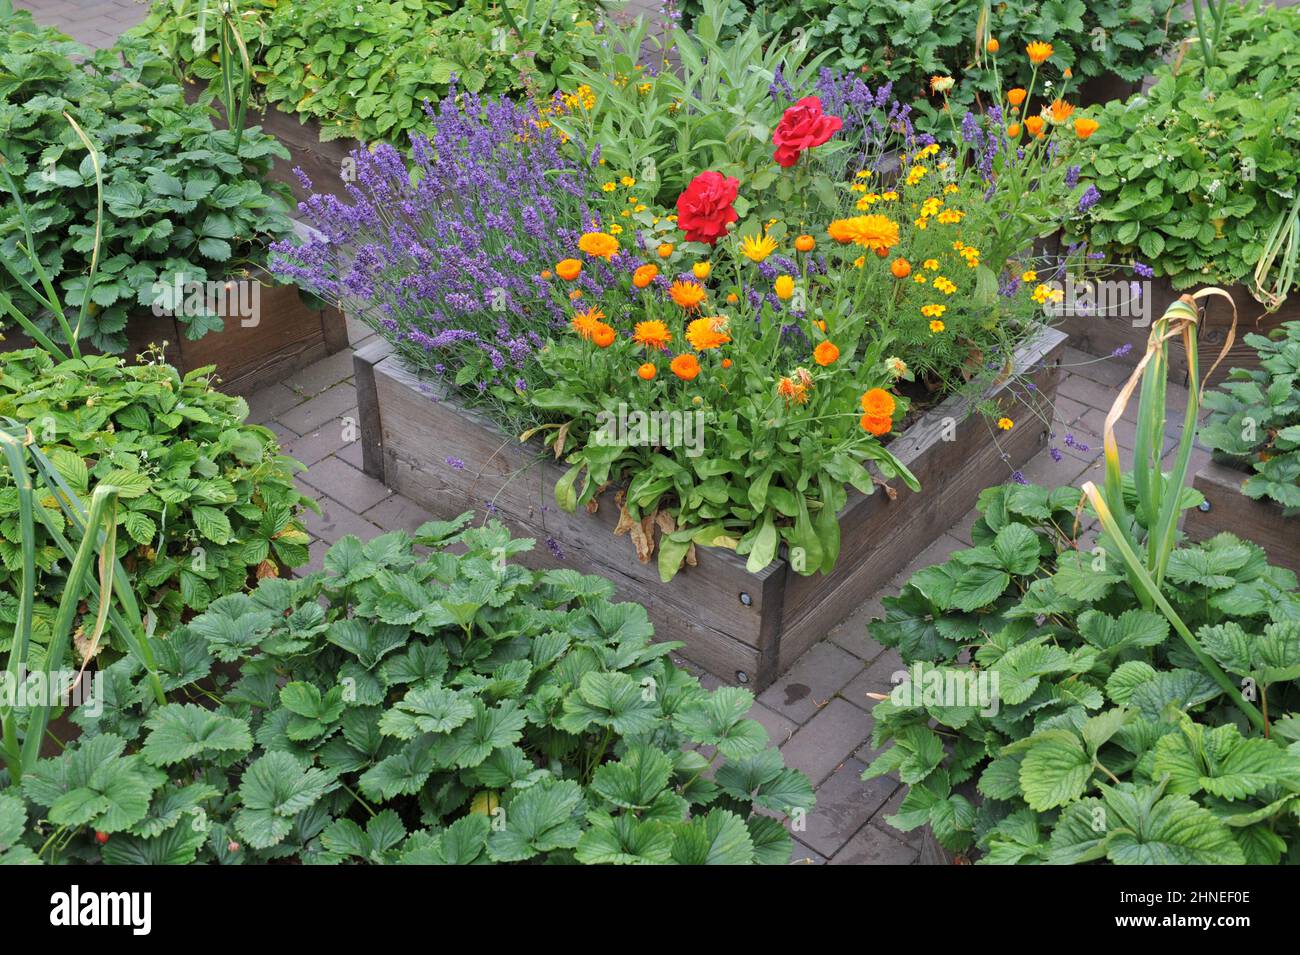 Un jardin potager avec des lits en bois surélevés avec des fraises, de l'ail et des fleurs en juillet Banque D'Images